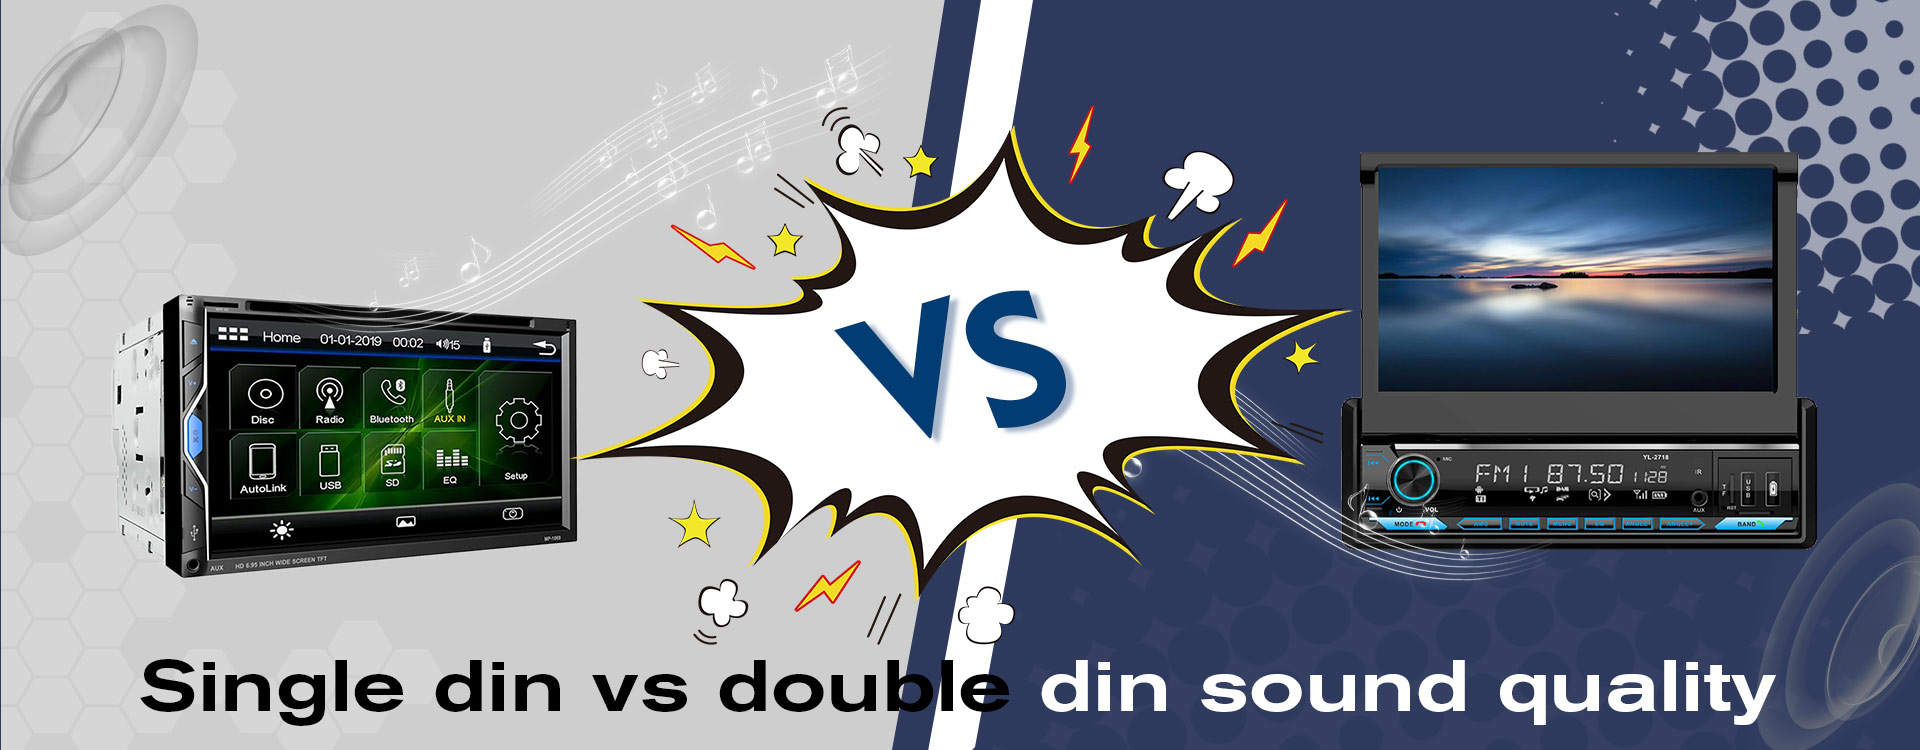 Single din vs doubdin sound quality